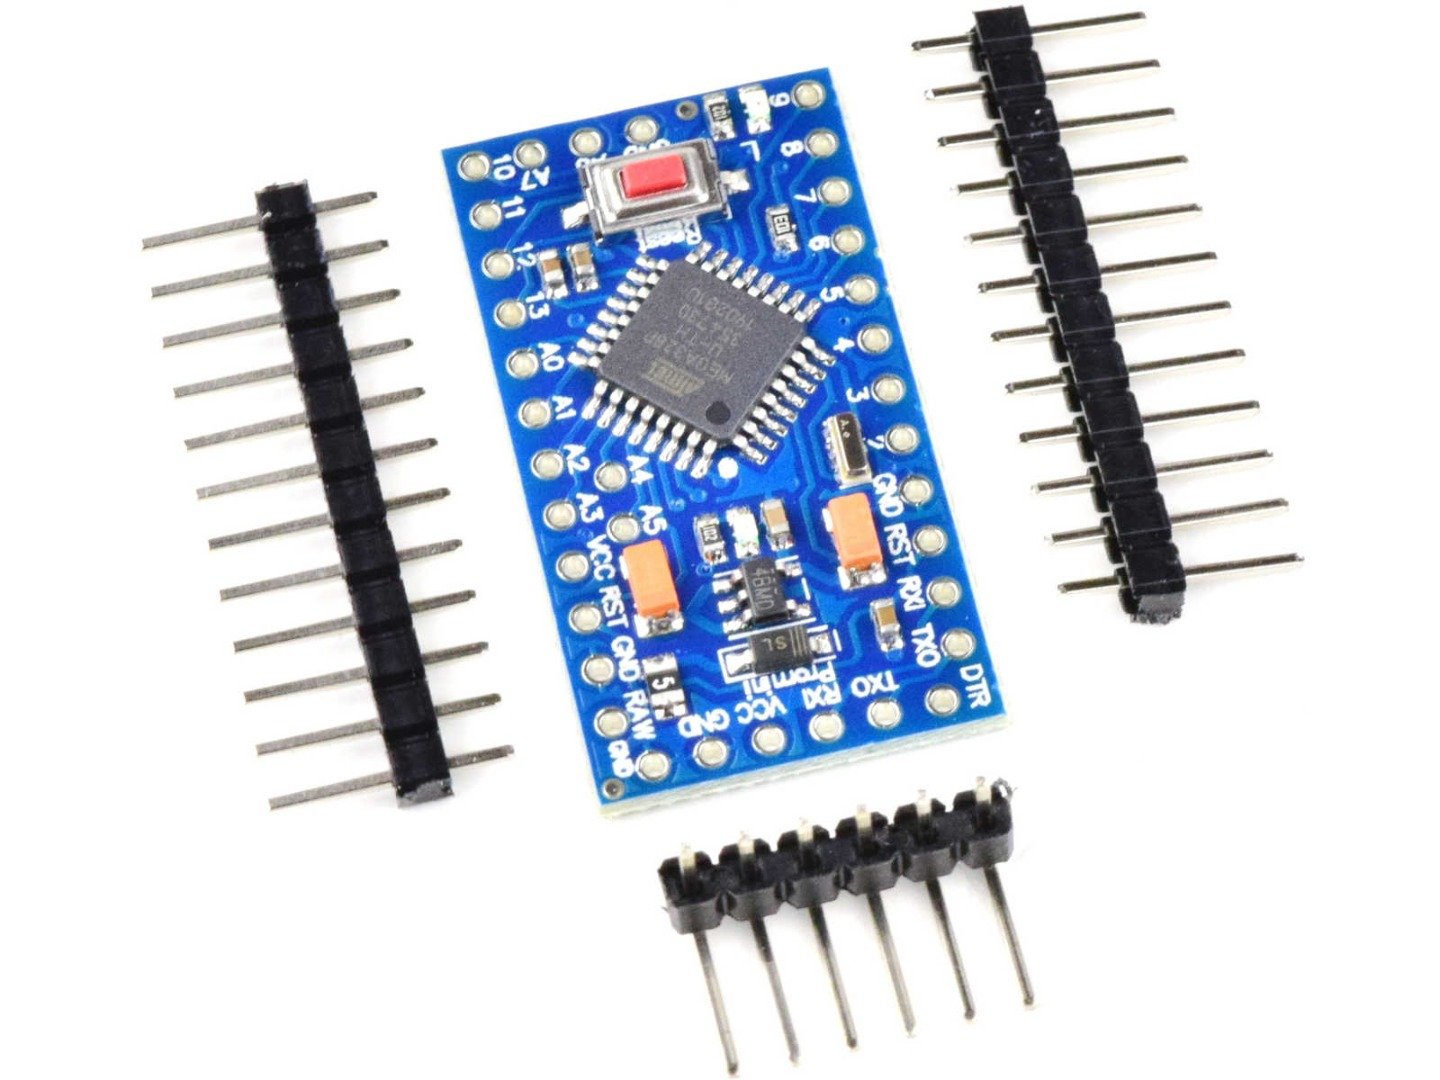 Pro Mini module ATmega328P 3.3V, 8MHz (100% compatible with Arduino) 5